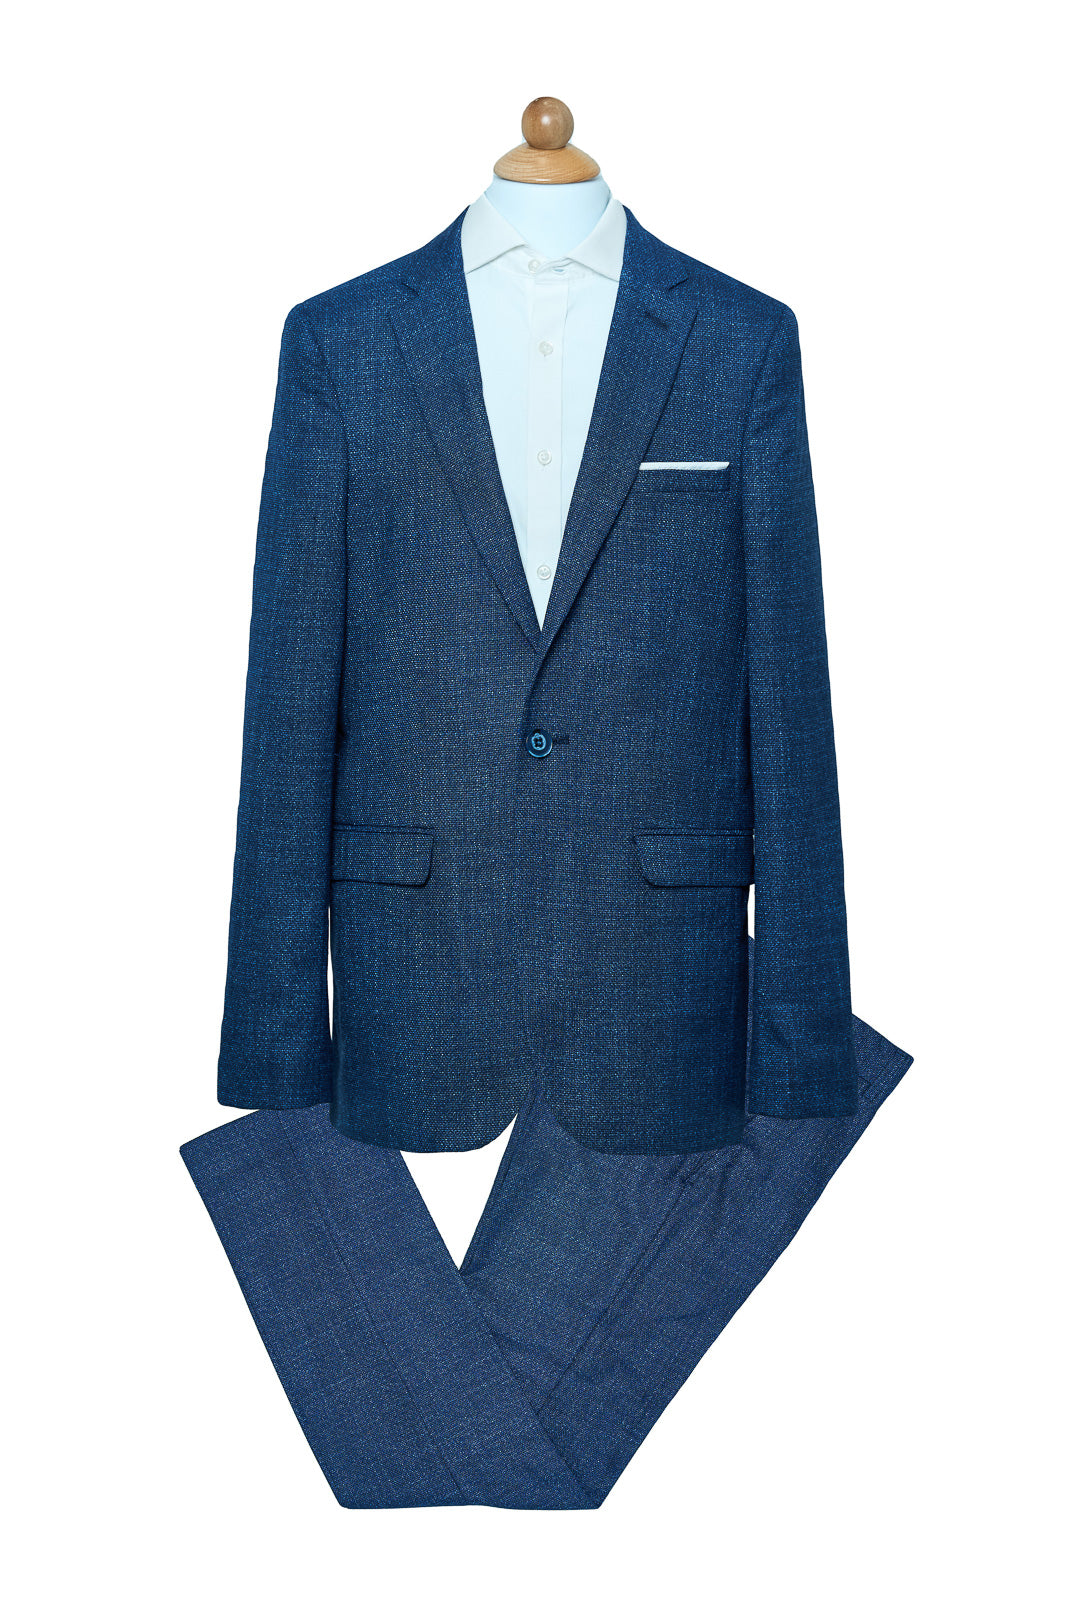 Electric Blue Patterned Suit